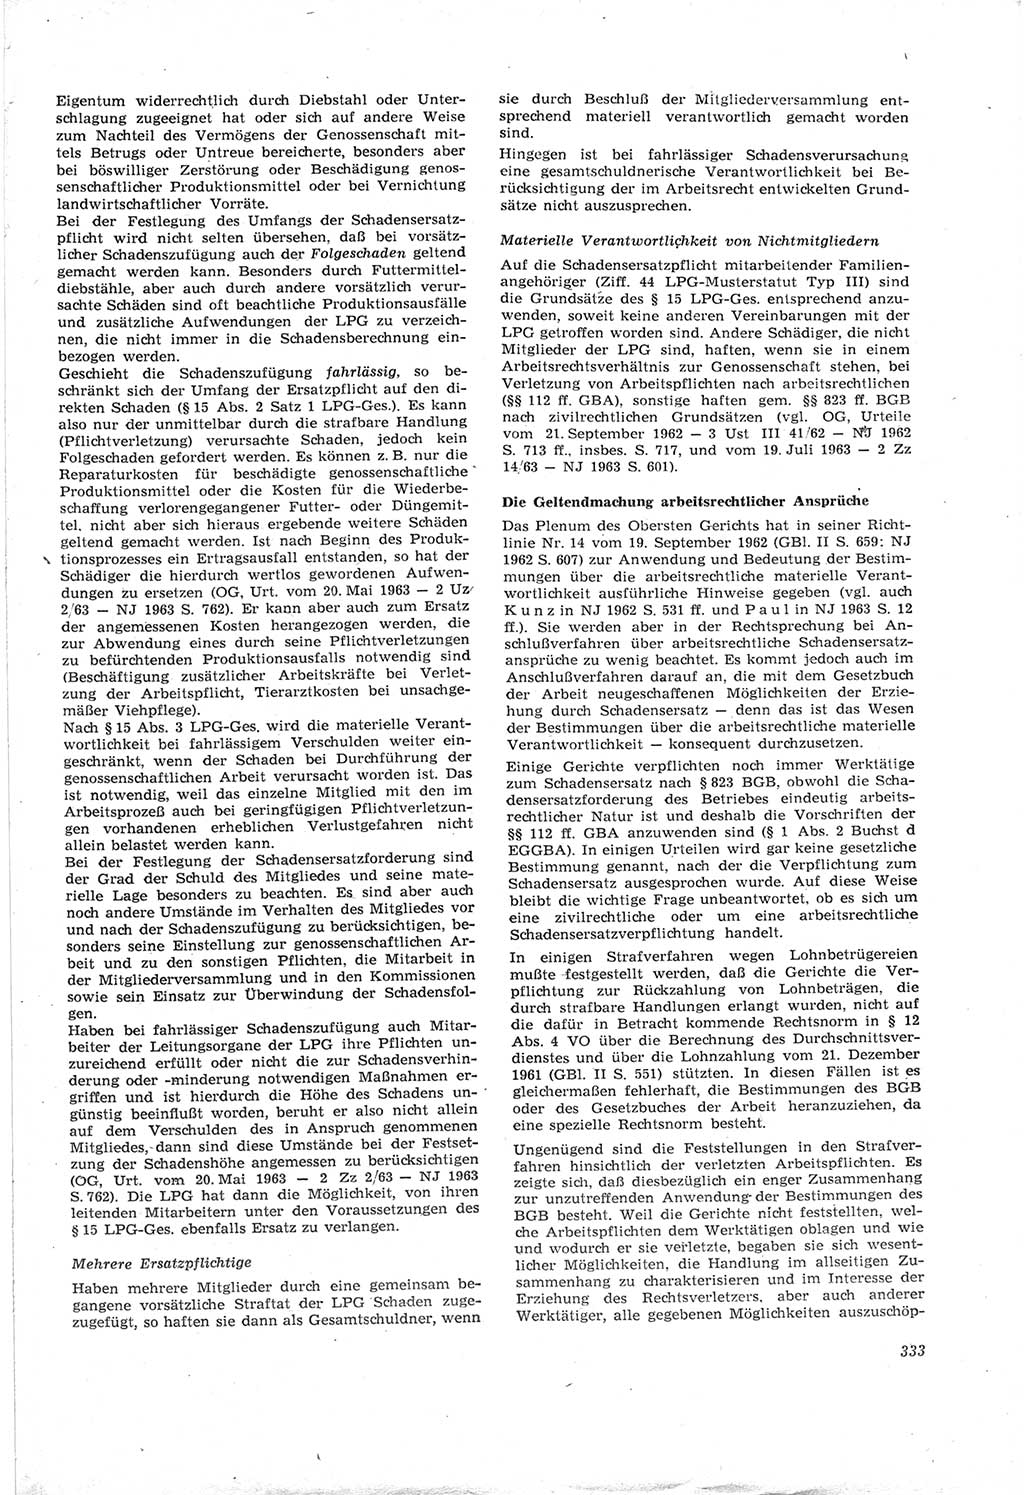 Neue Justiz (NJ), Zeitschrift für Recht und Rechtswissenschaft [Deutsche Demokratische Republik (DDR)], 18. Jahrgang 1964, Seite 333 (NJ DDR 1964, S. 333)